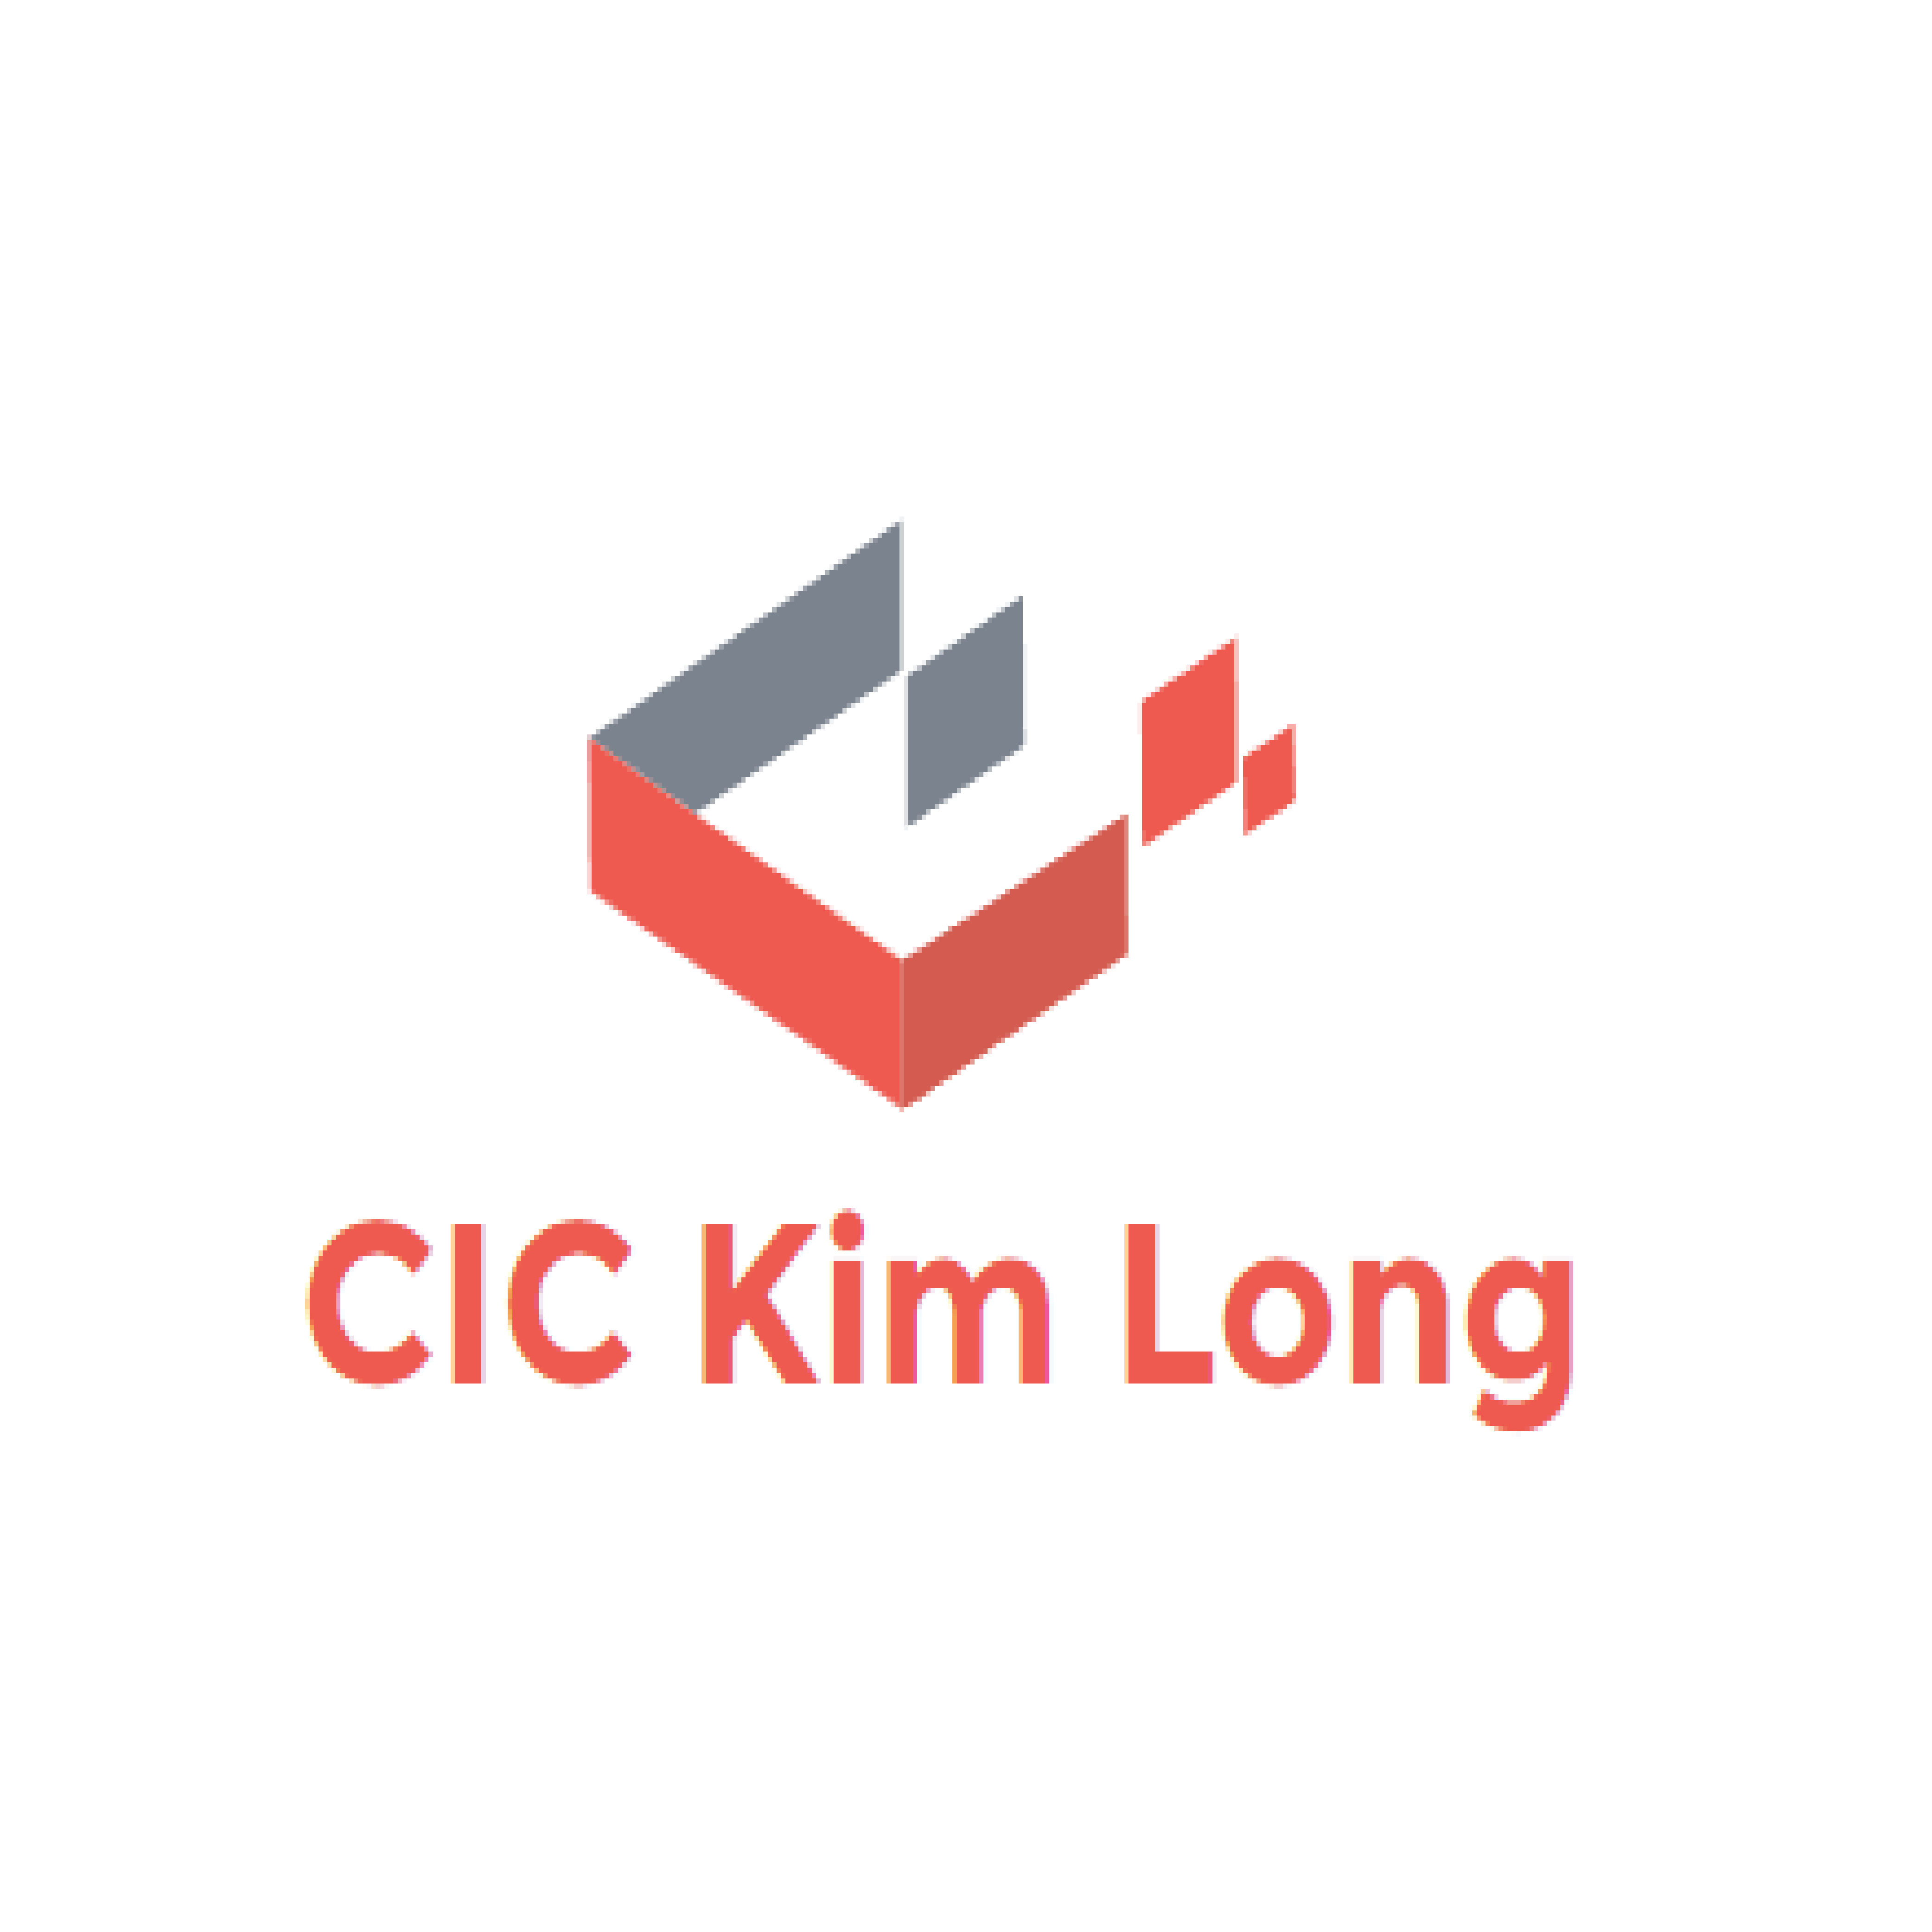 CIC Kim Long Ltd.